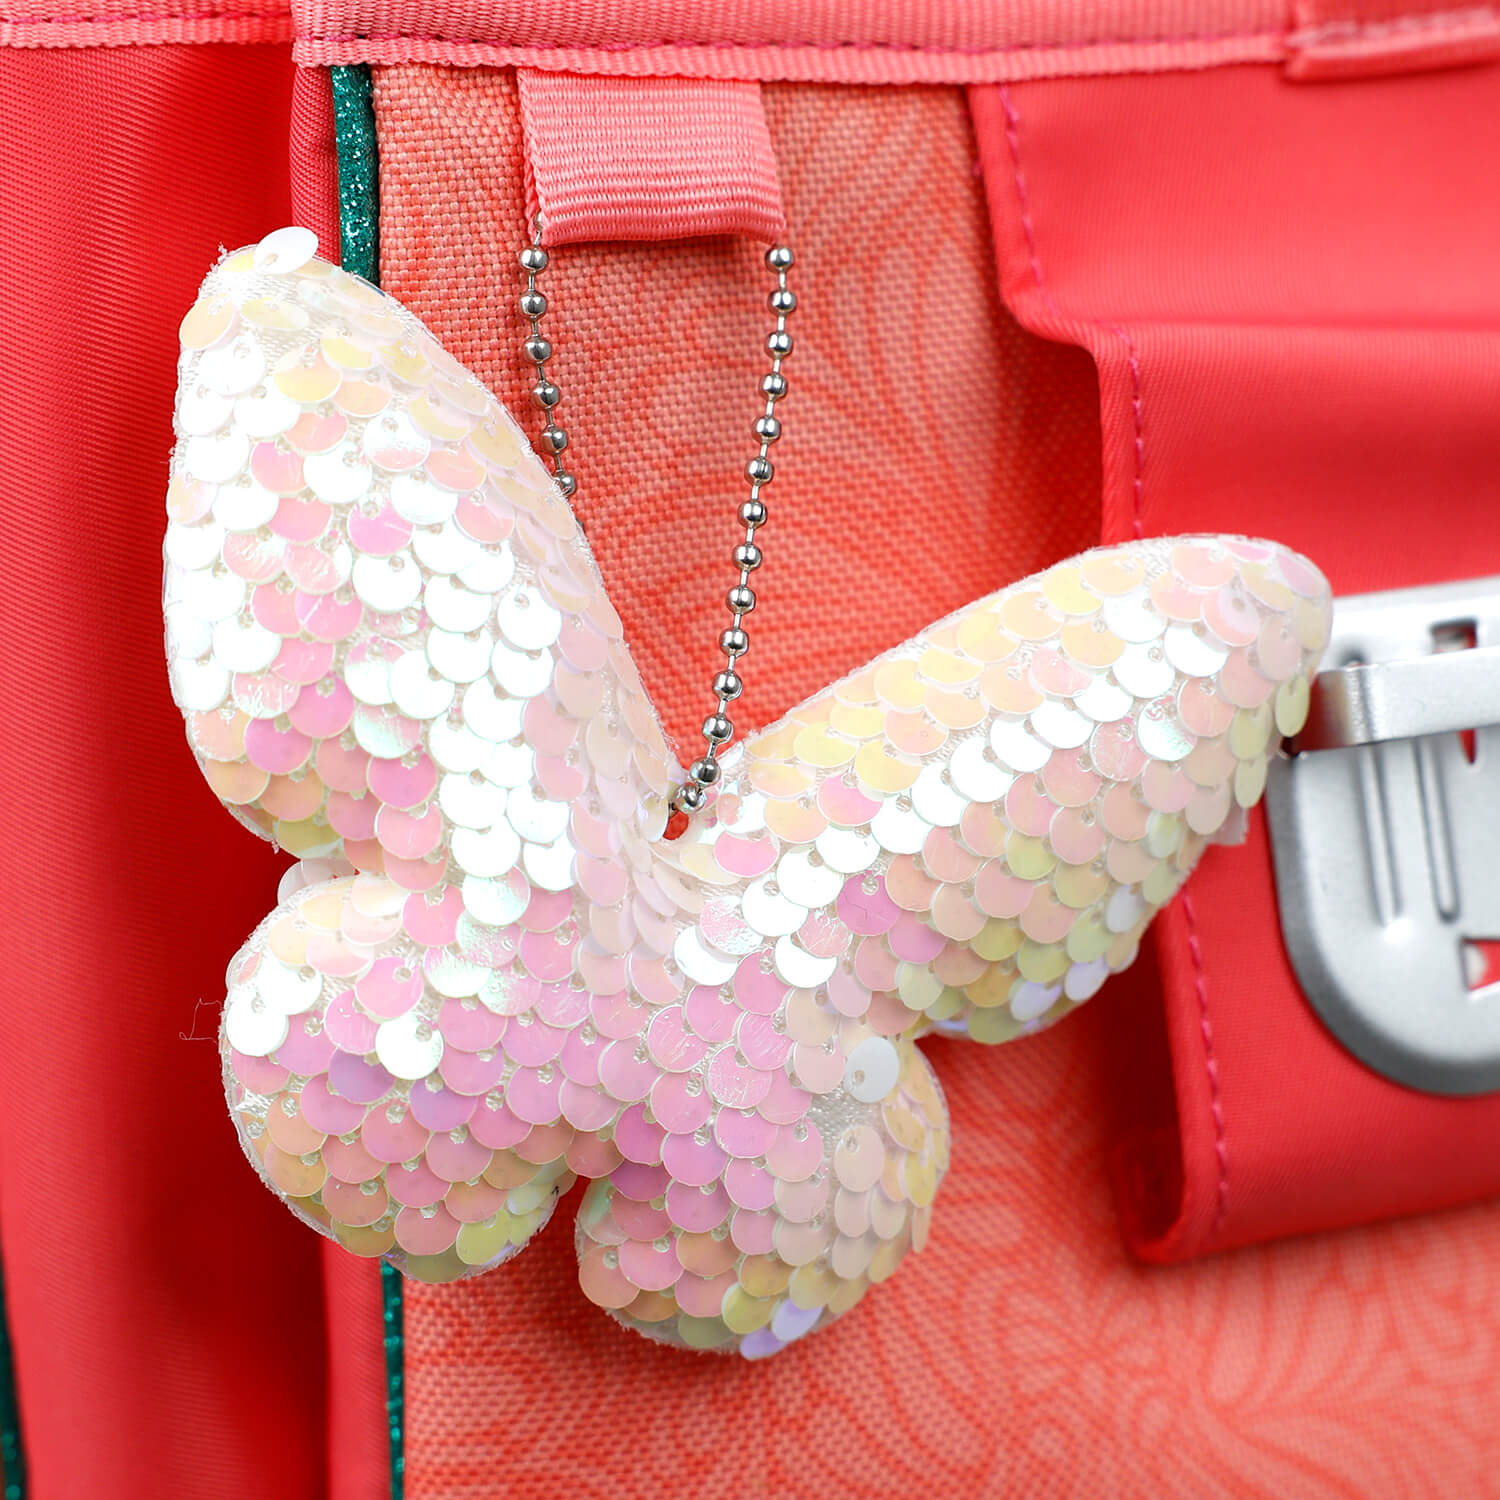 Schlüsse﻿lhalter White Pink Butterfly Glitter